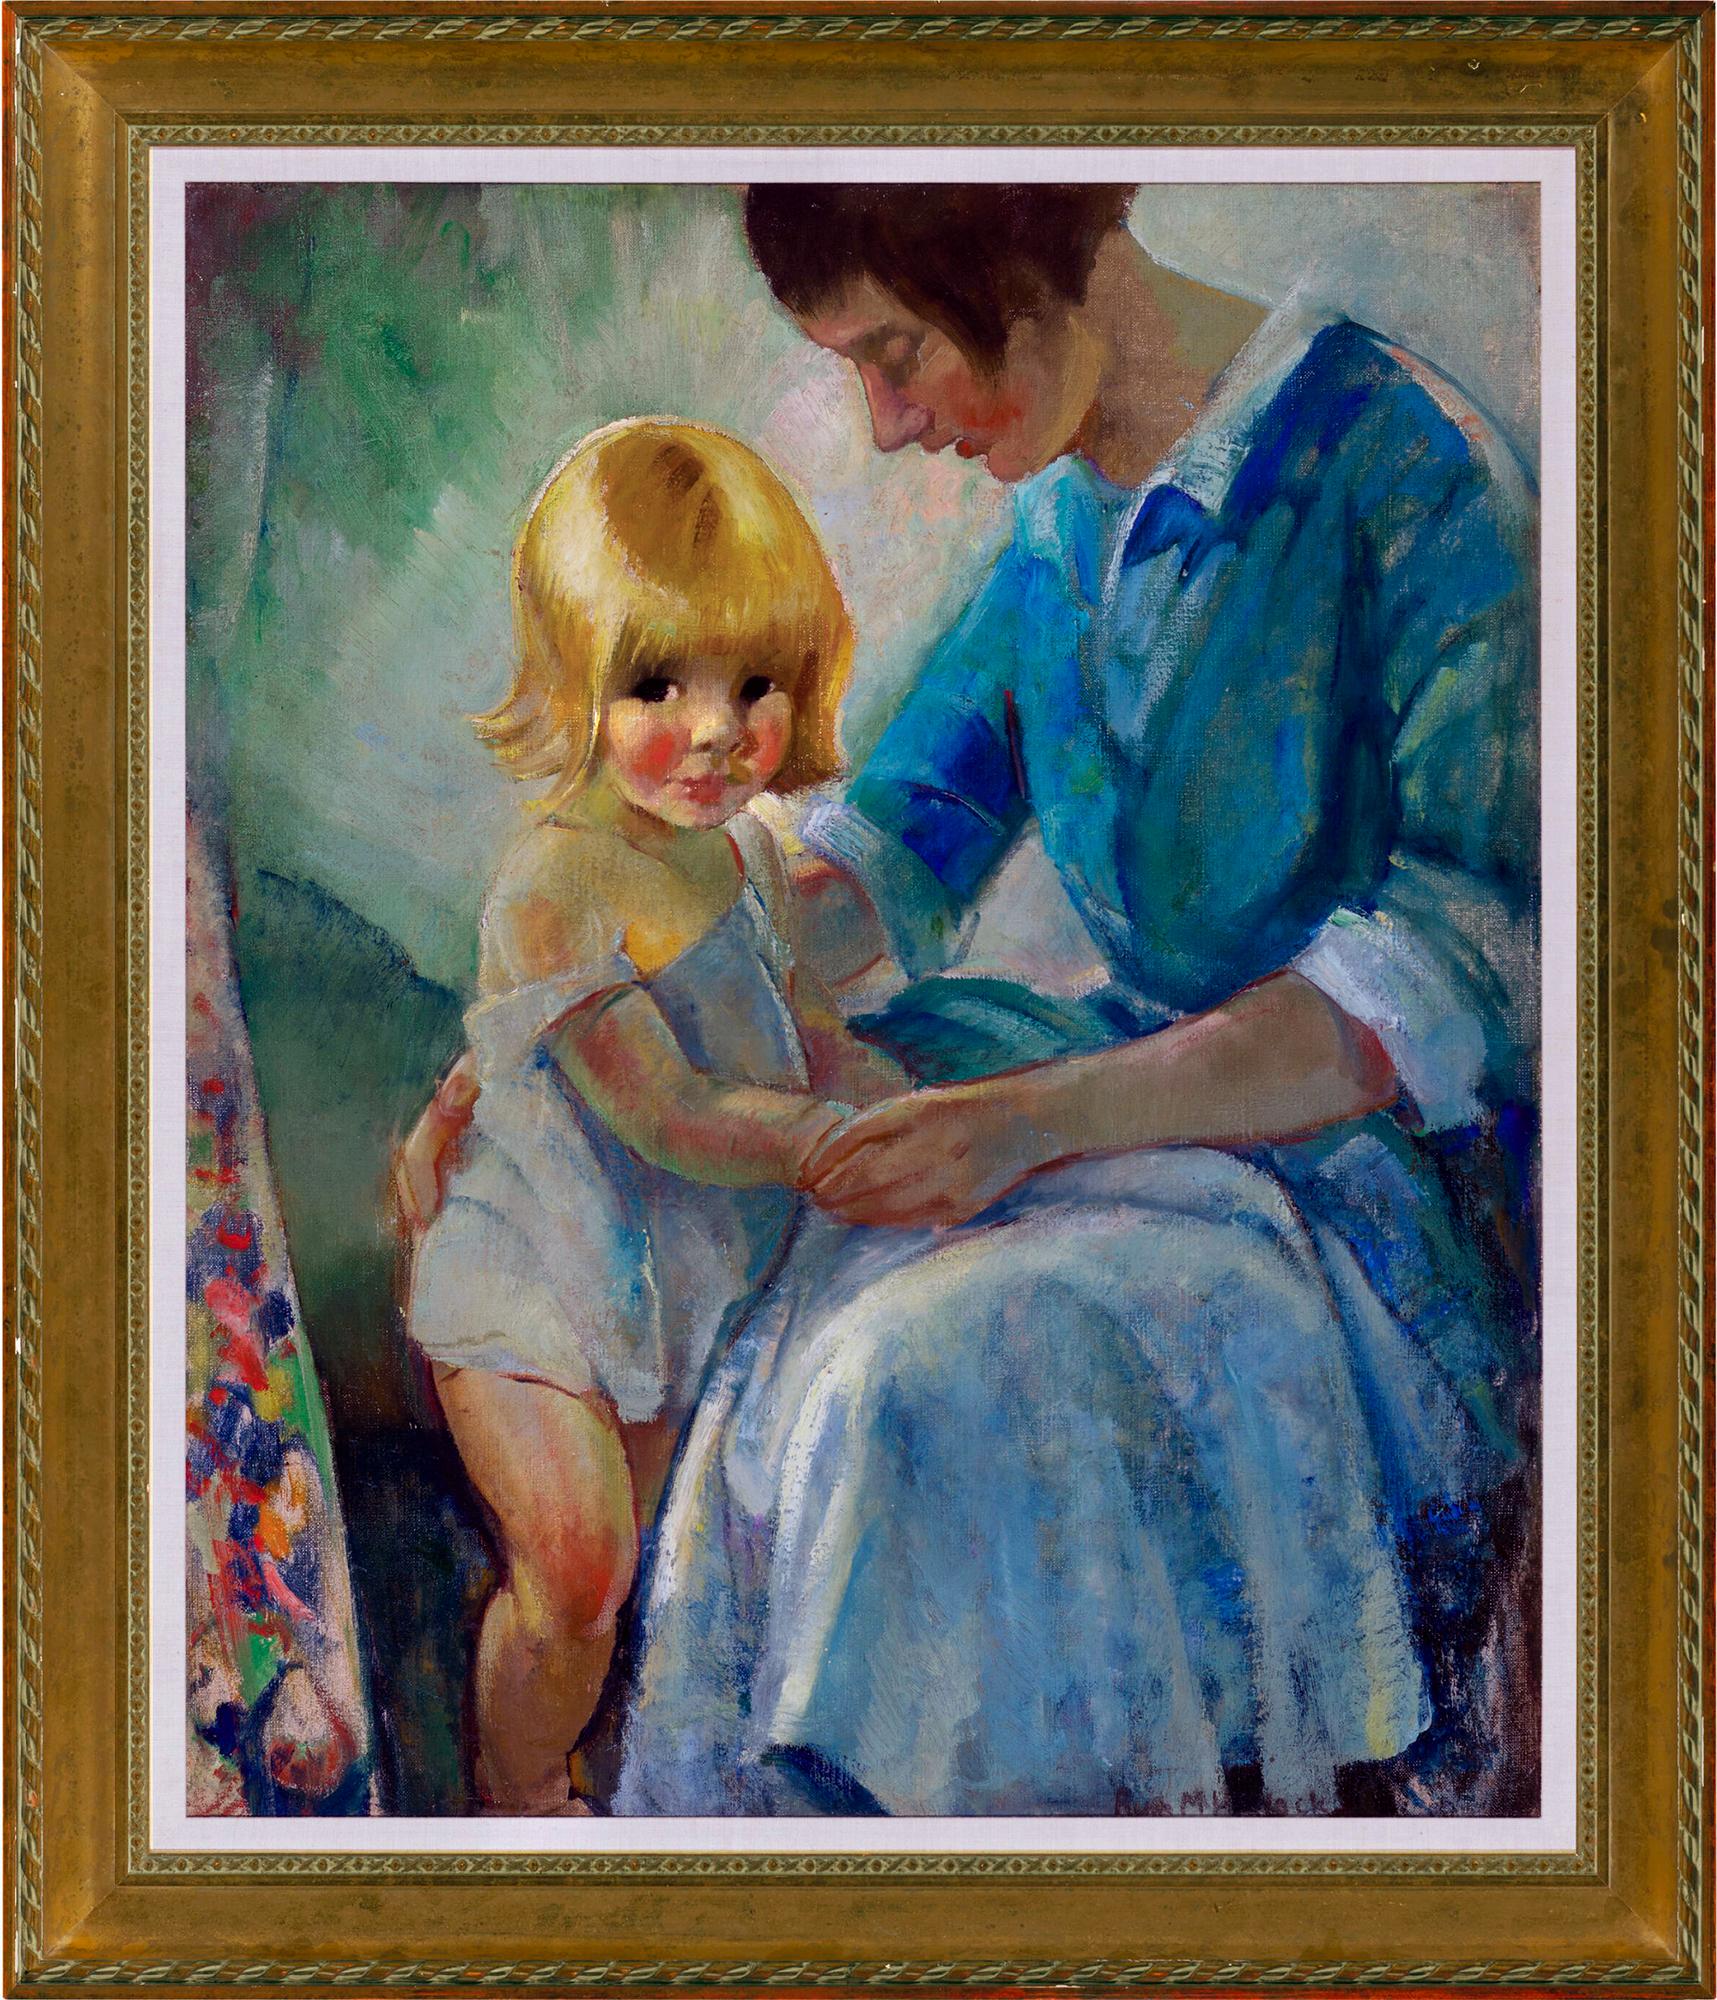 Mutter und Kind in  Tender Moment – weibliche Illustratorin des Goldenen Zeitalters – Painting von Ruth Mary Hallock